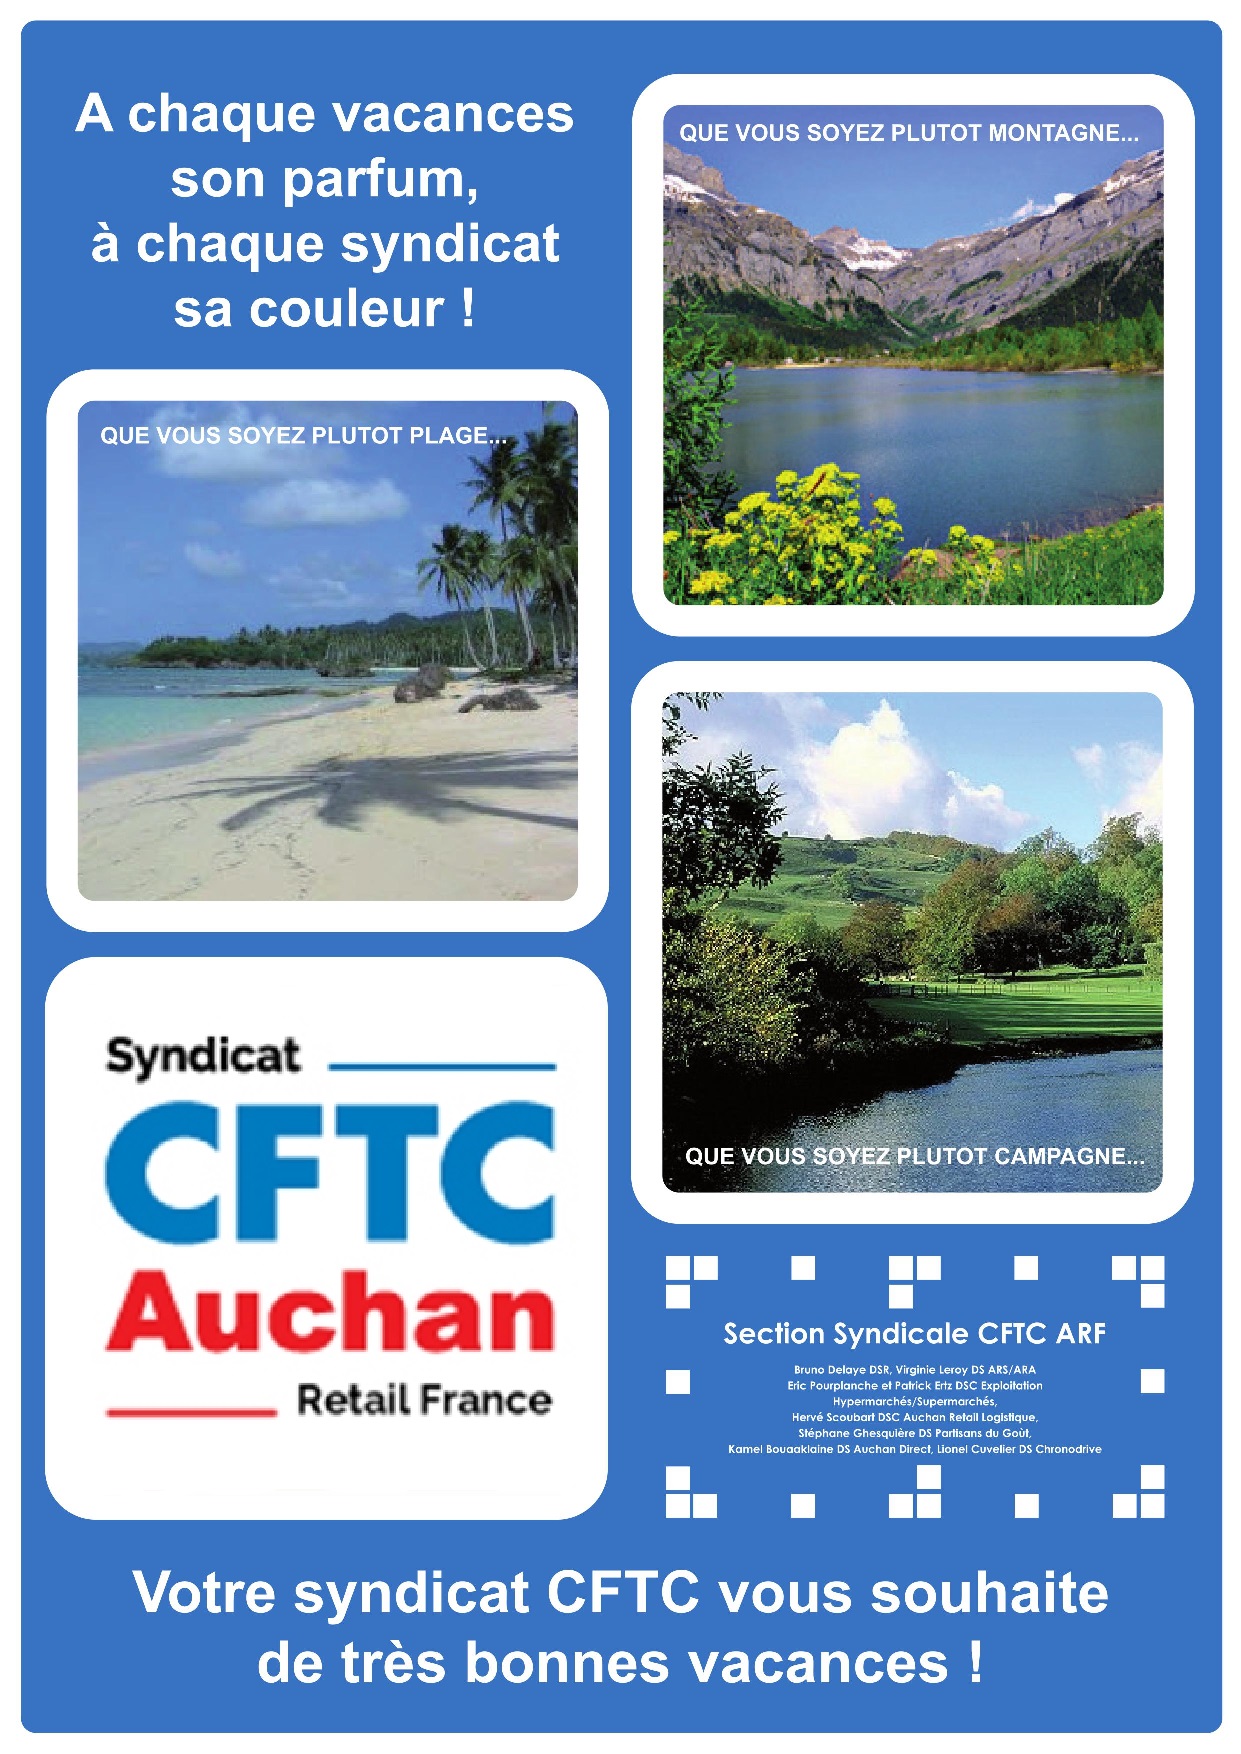 Bonnes Vacances 19 Cftc Groupe Auchan